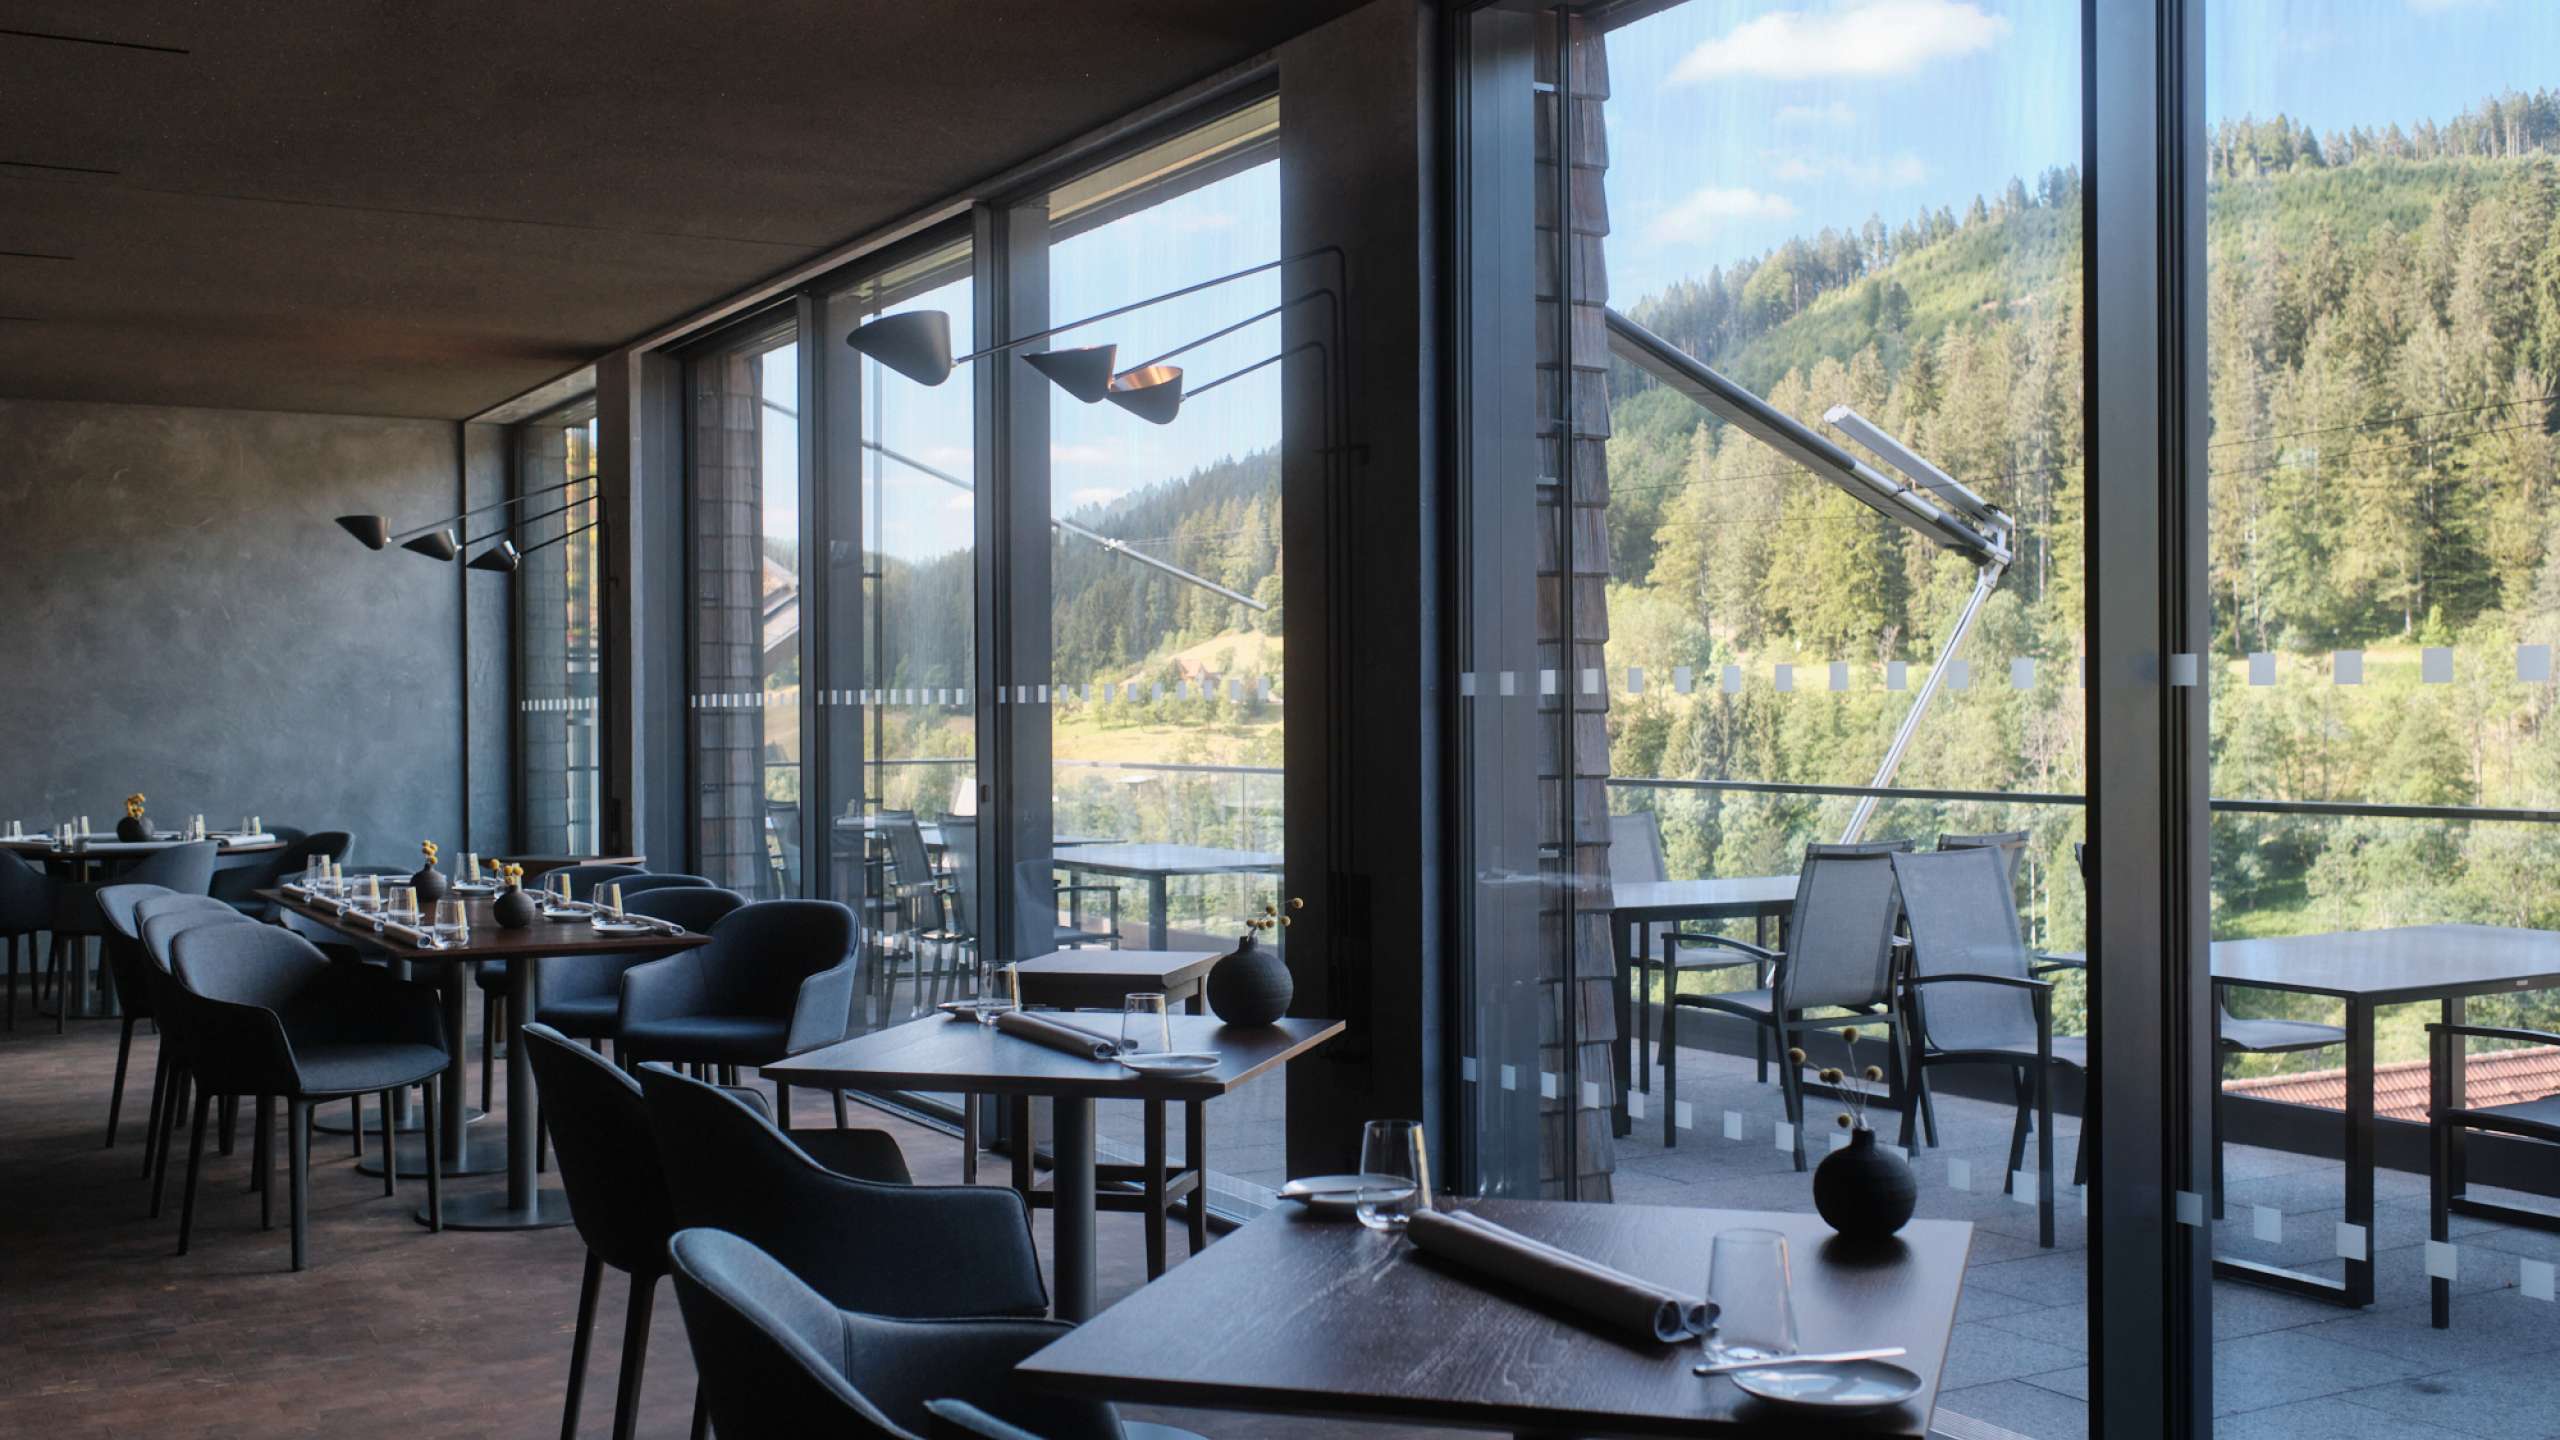 Das Restaurant Schatzhauser in der Eventlocation im Schwarzwald mit Blick auf grüne Bergkulisse.